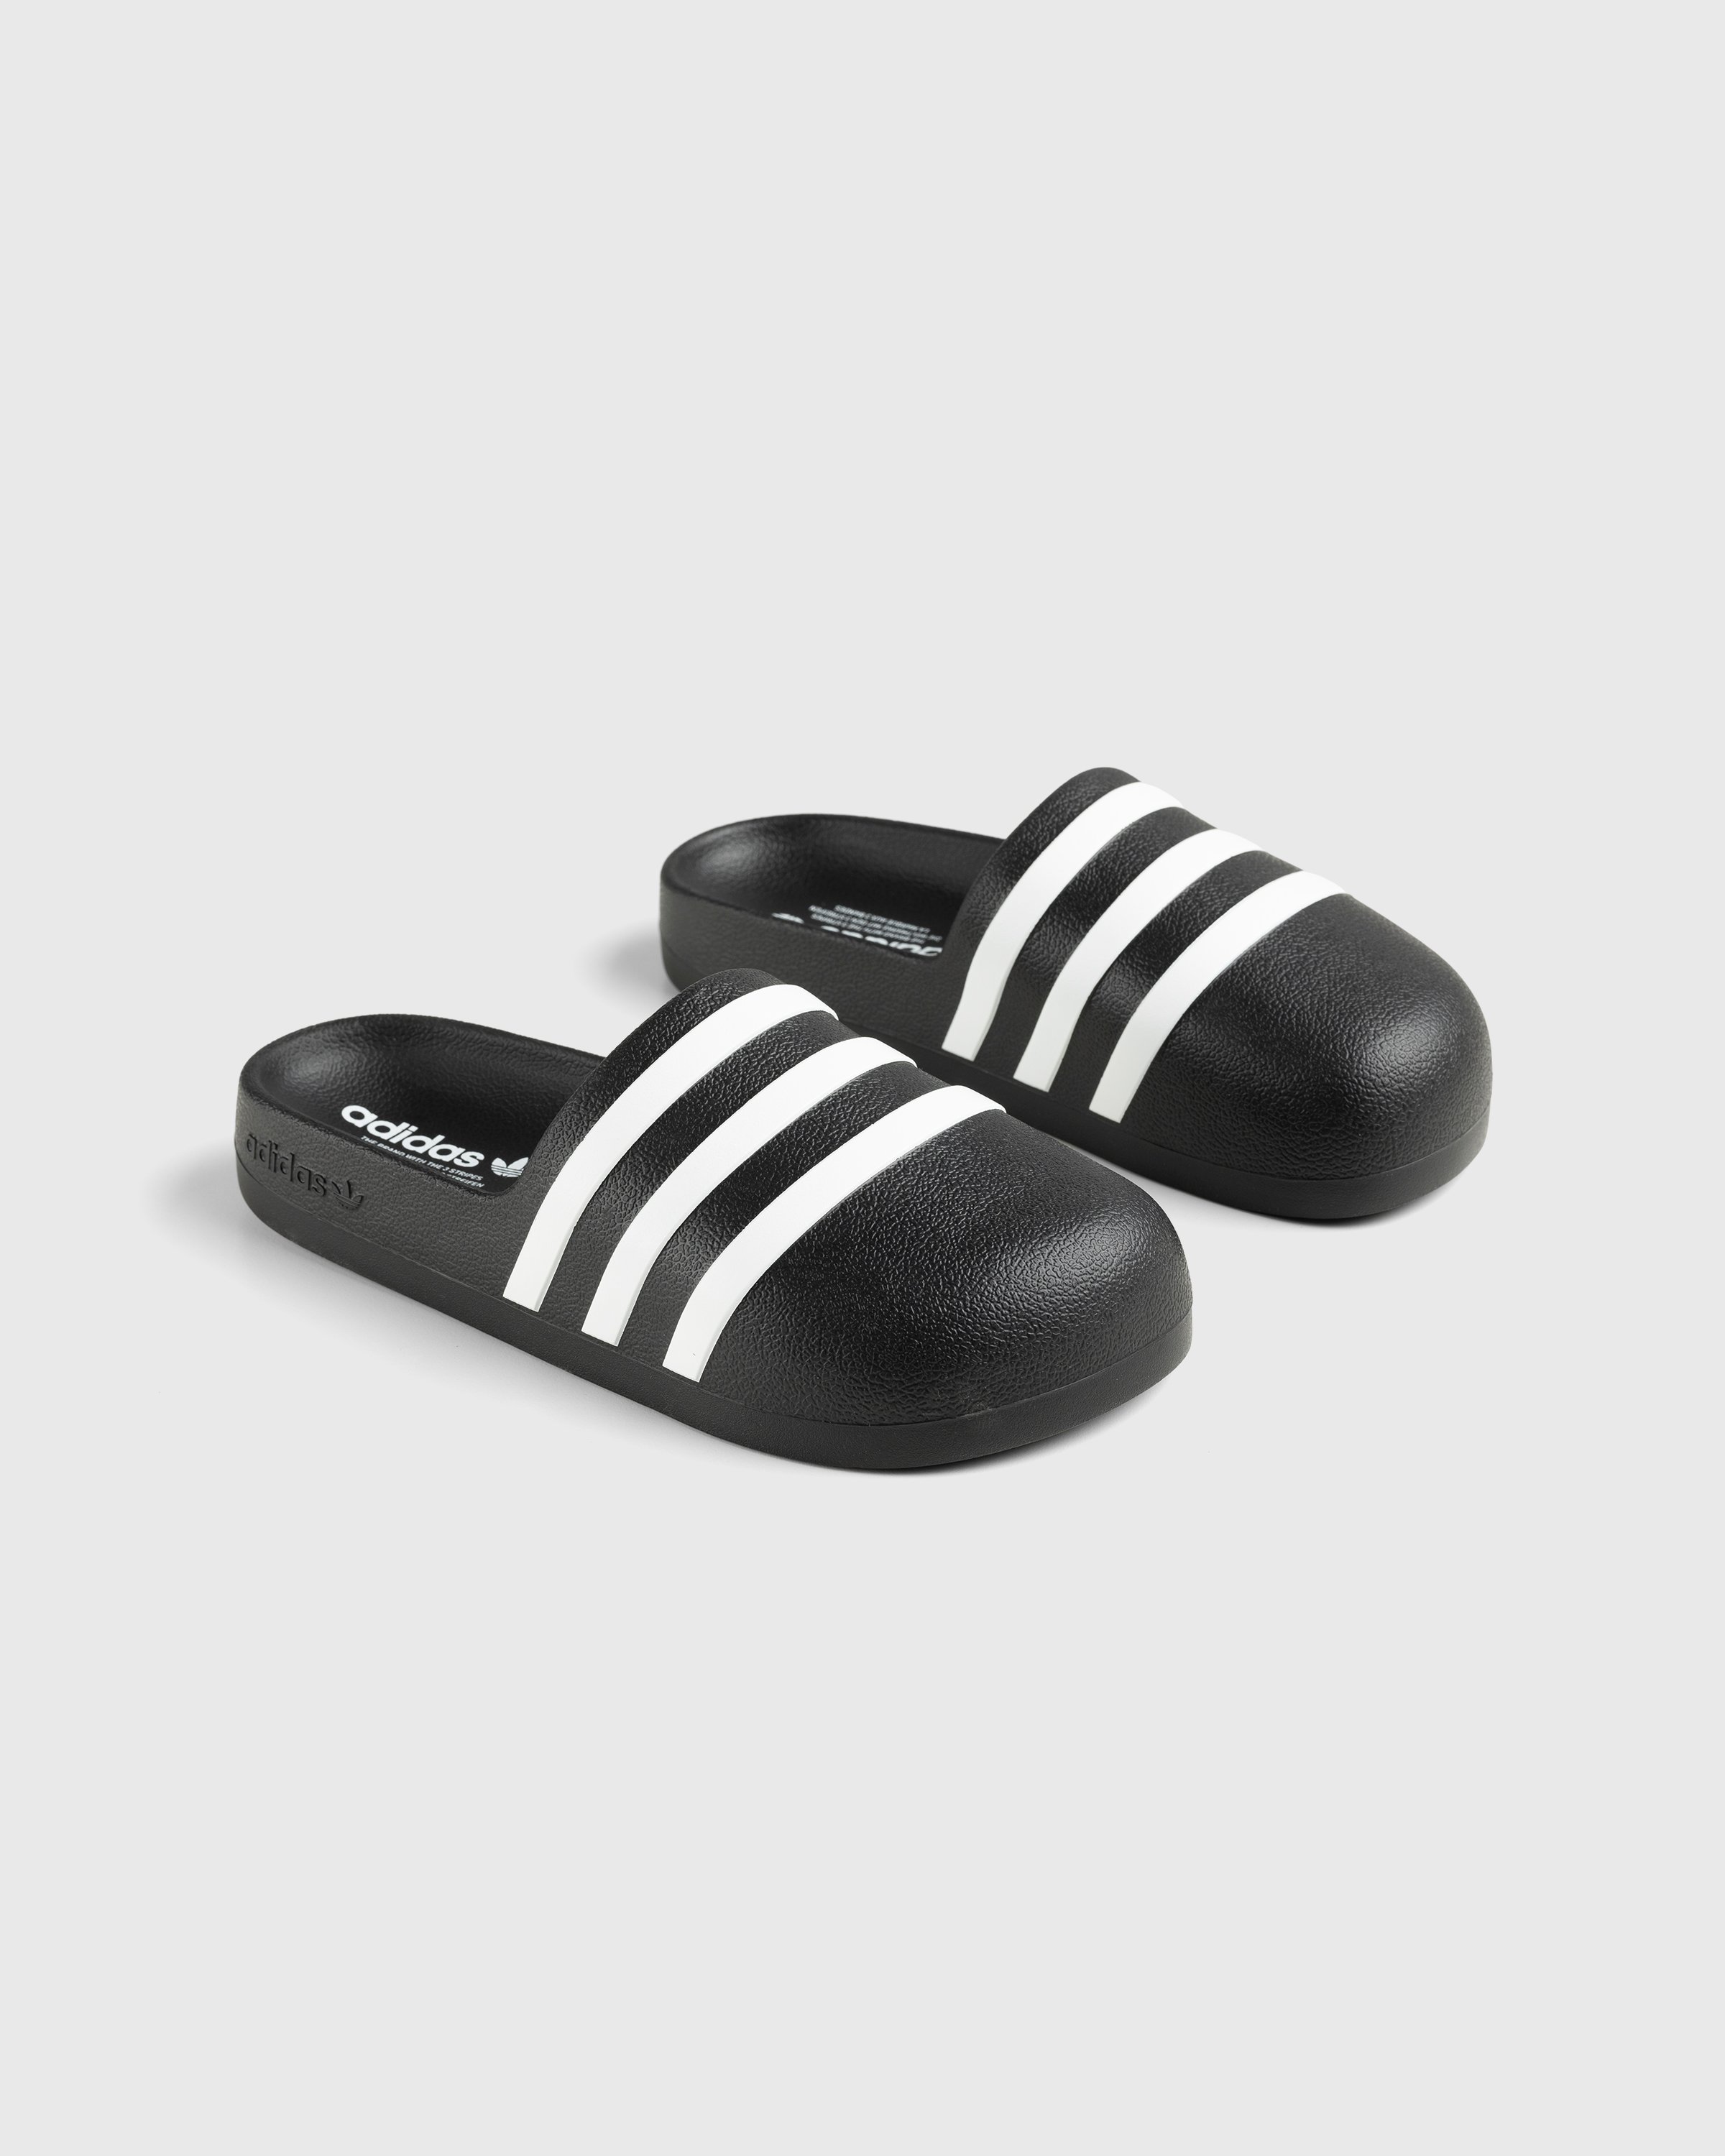 Adidas - Adifom Adilette Black/White/Black - Footwear - Black - Image 3